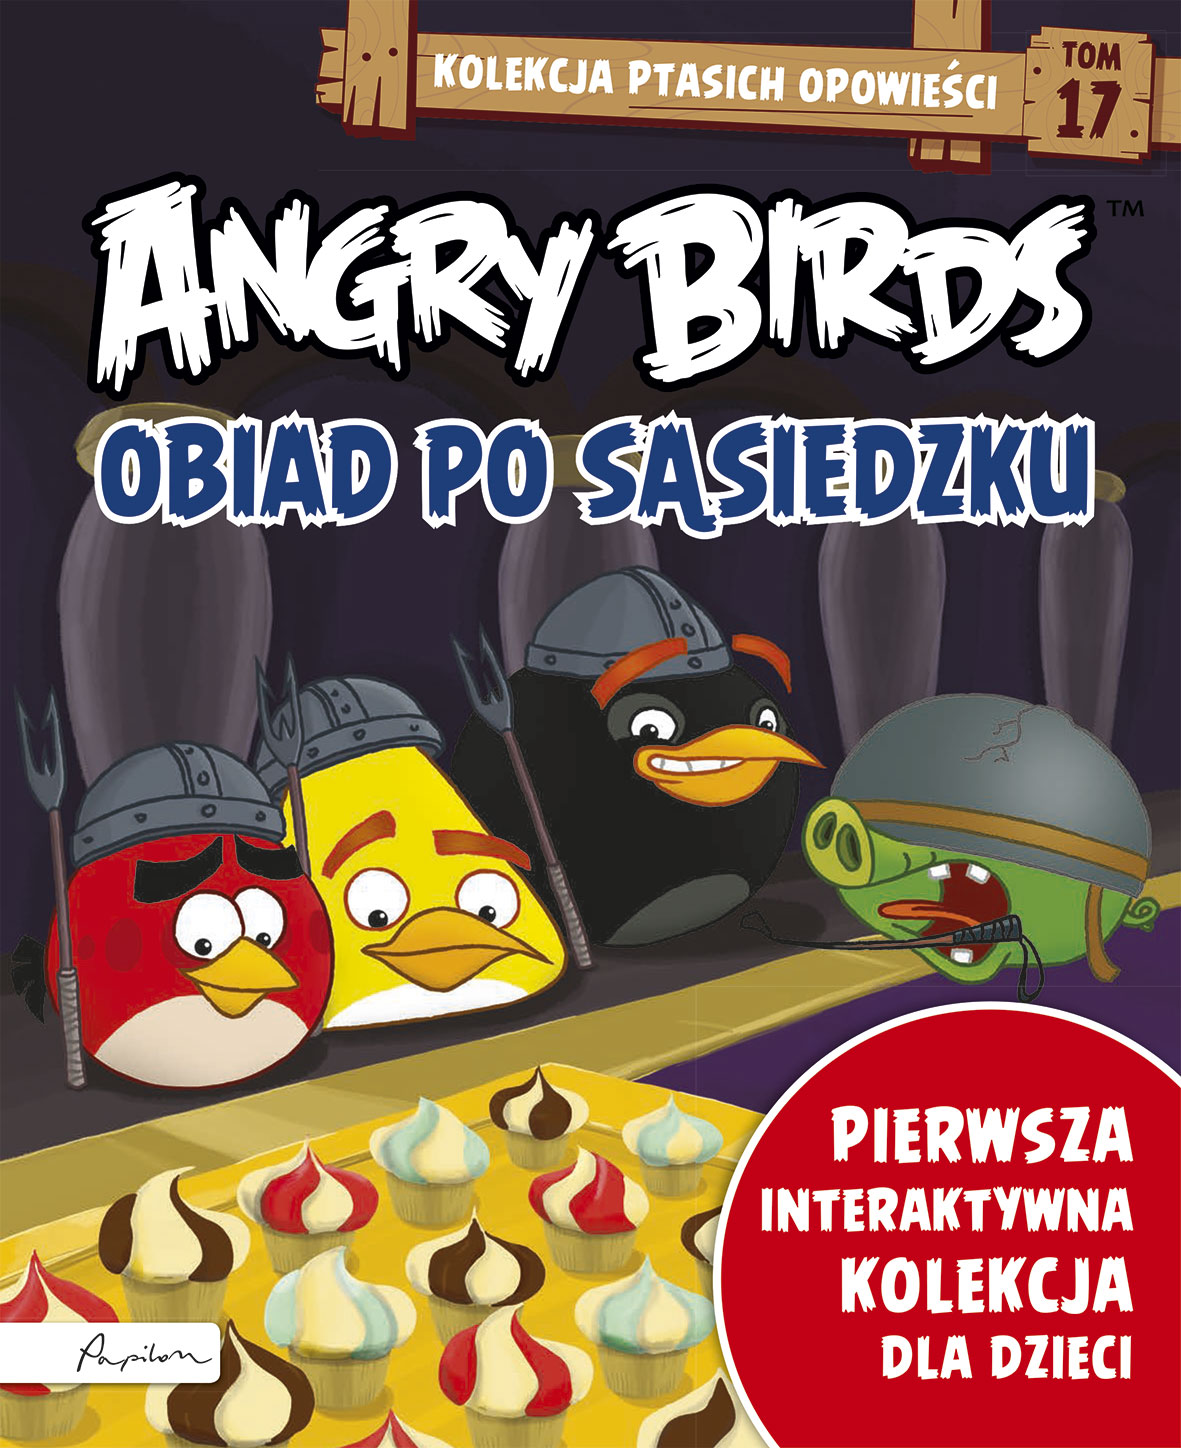 Angry Birds. Kolekcja ptasich opowieści 18. Eliksir świniowatości